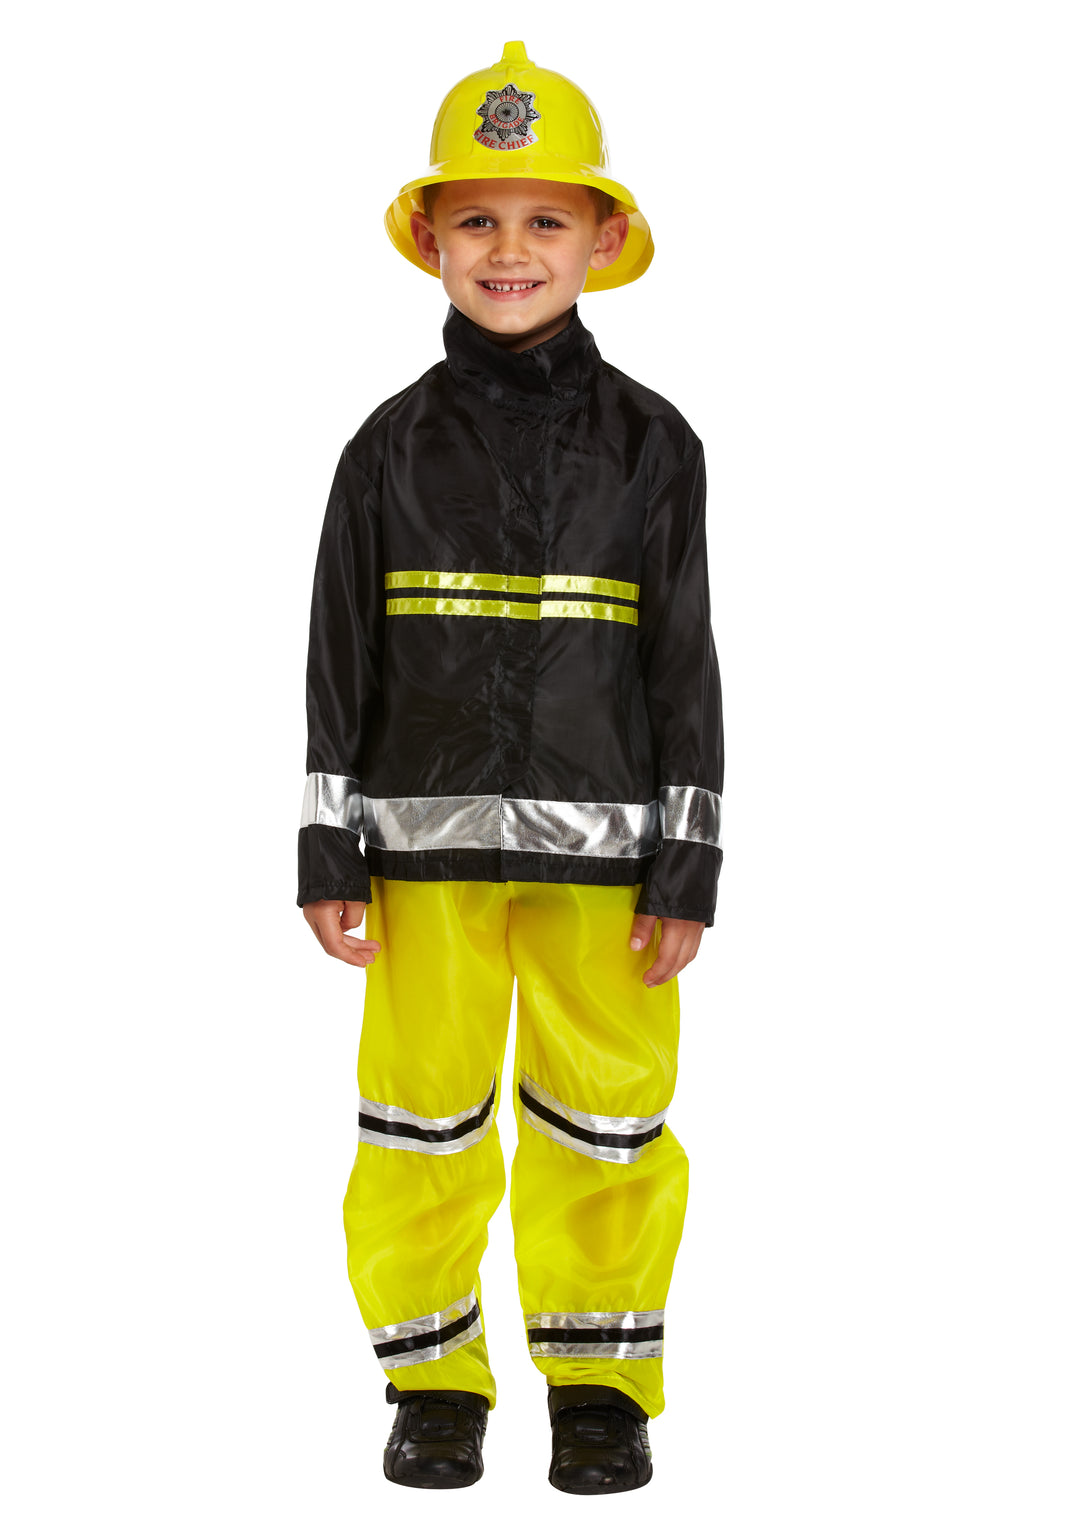 Boys Fireman Fancy Dress Fire Fighter Uniform Costume